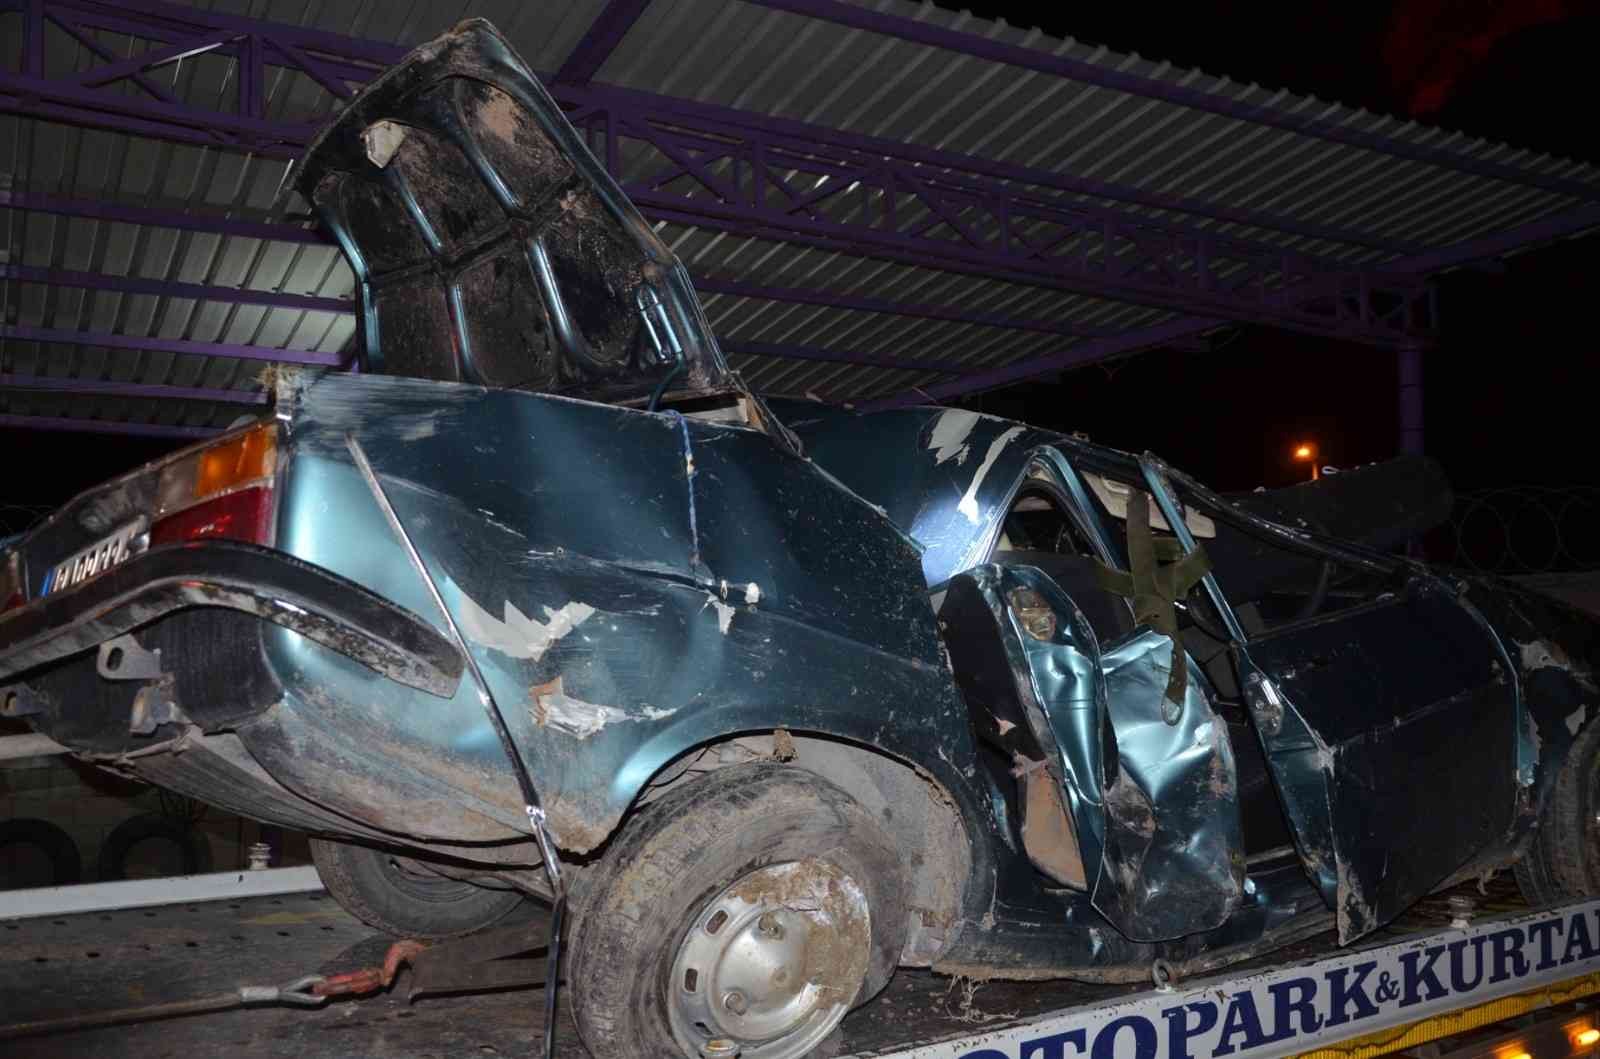 Konya’da otomobil takla attı: 1 ölü, 3 yaralı #konya